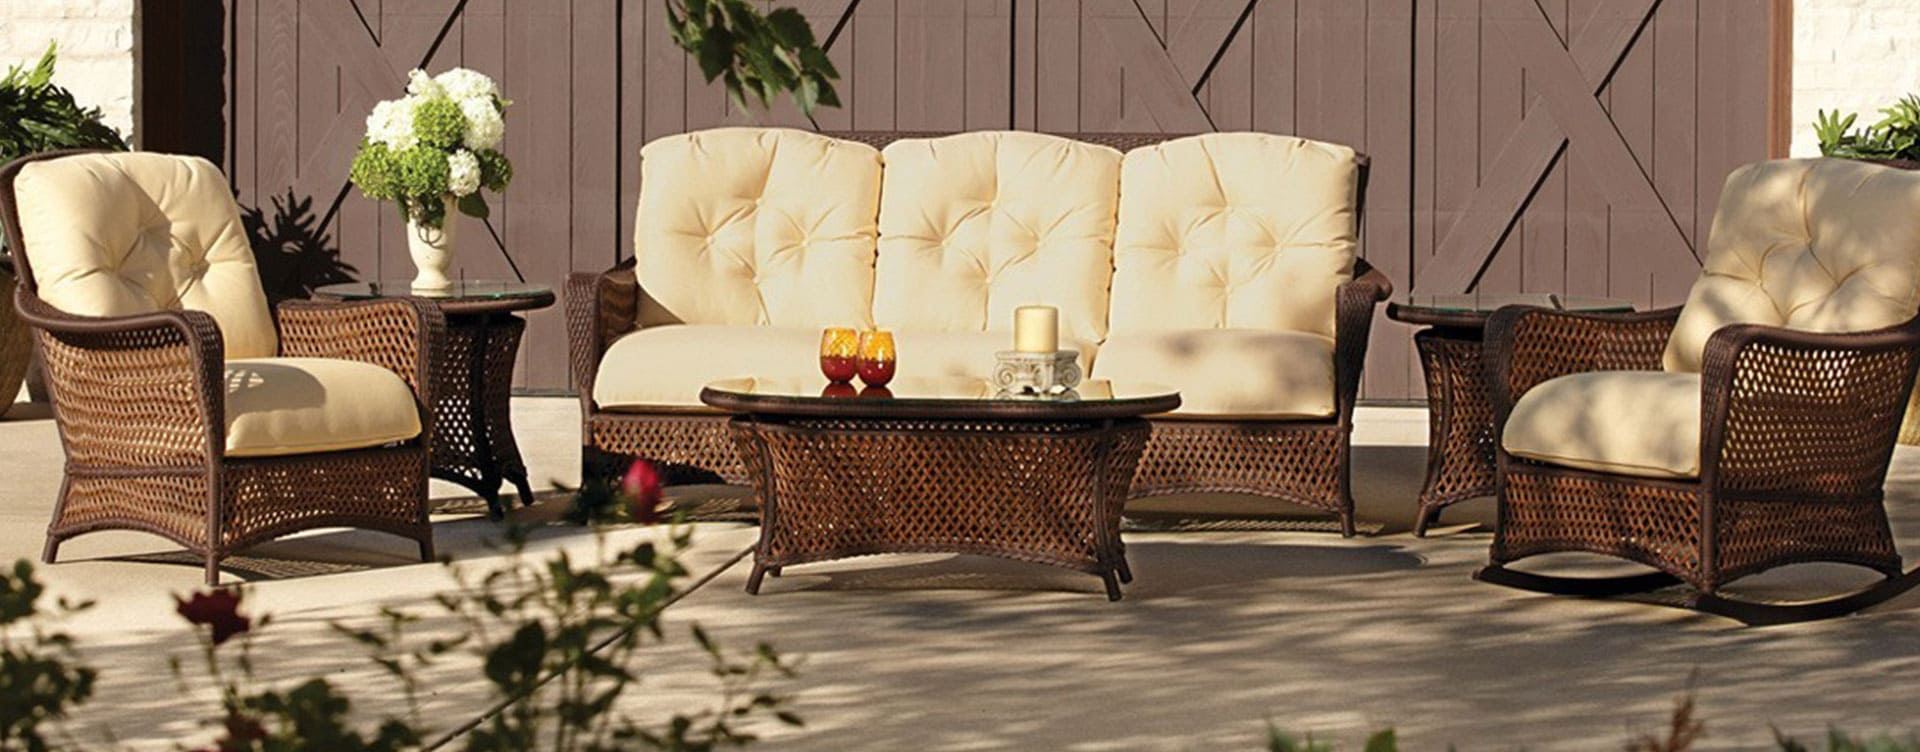 Buy patio furniture online